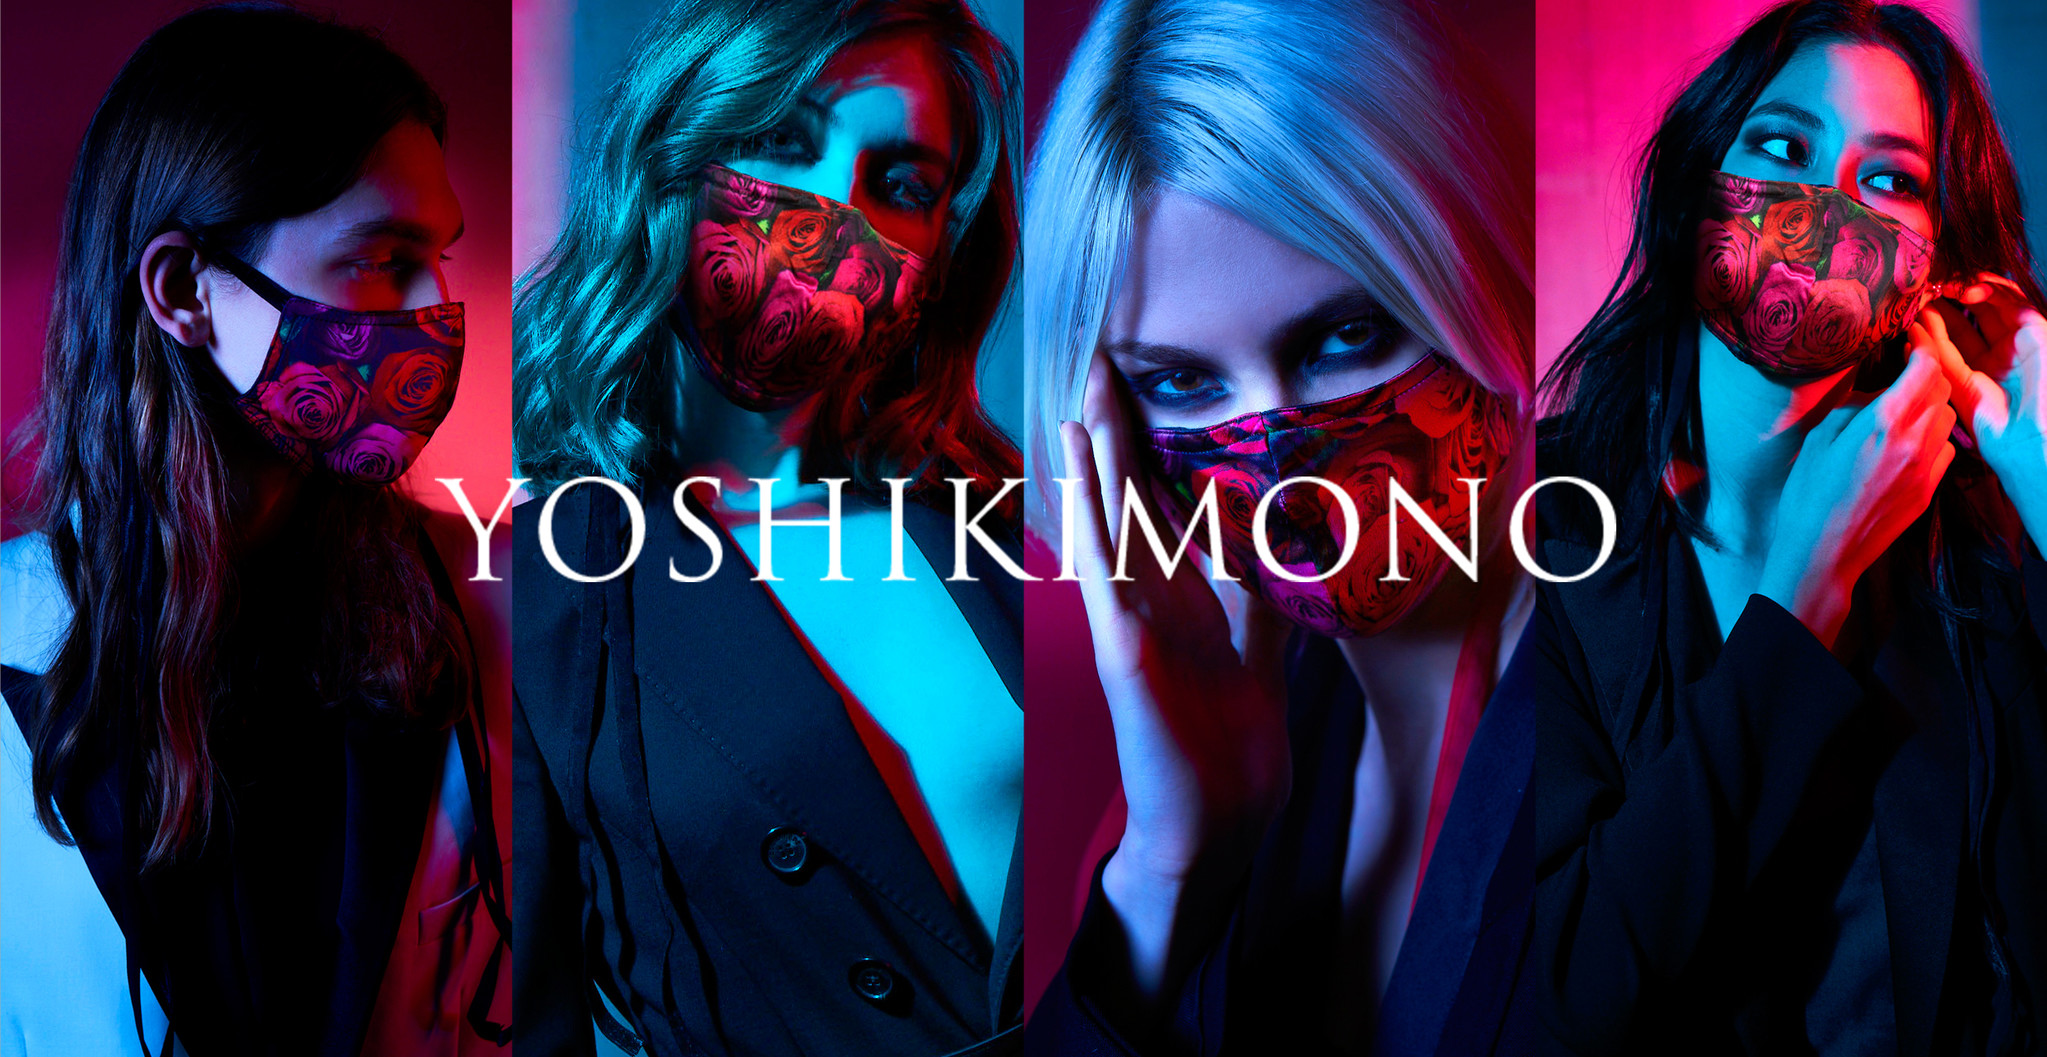 YOSHIKIの着物ブランド「YOSHIKIMONO」から待望のマスクが遂に発売 